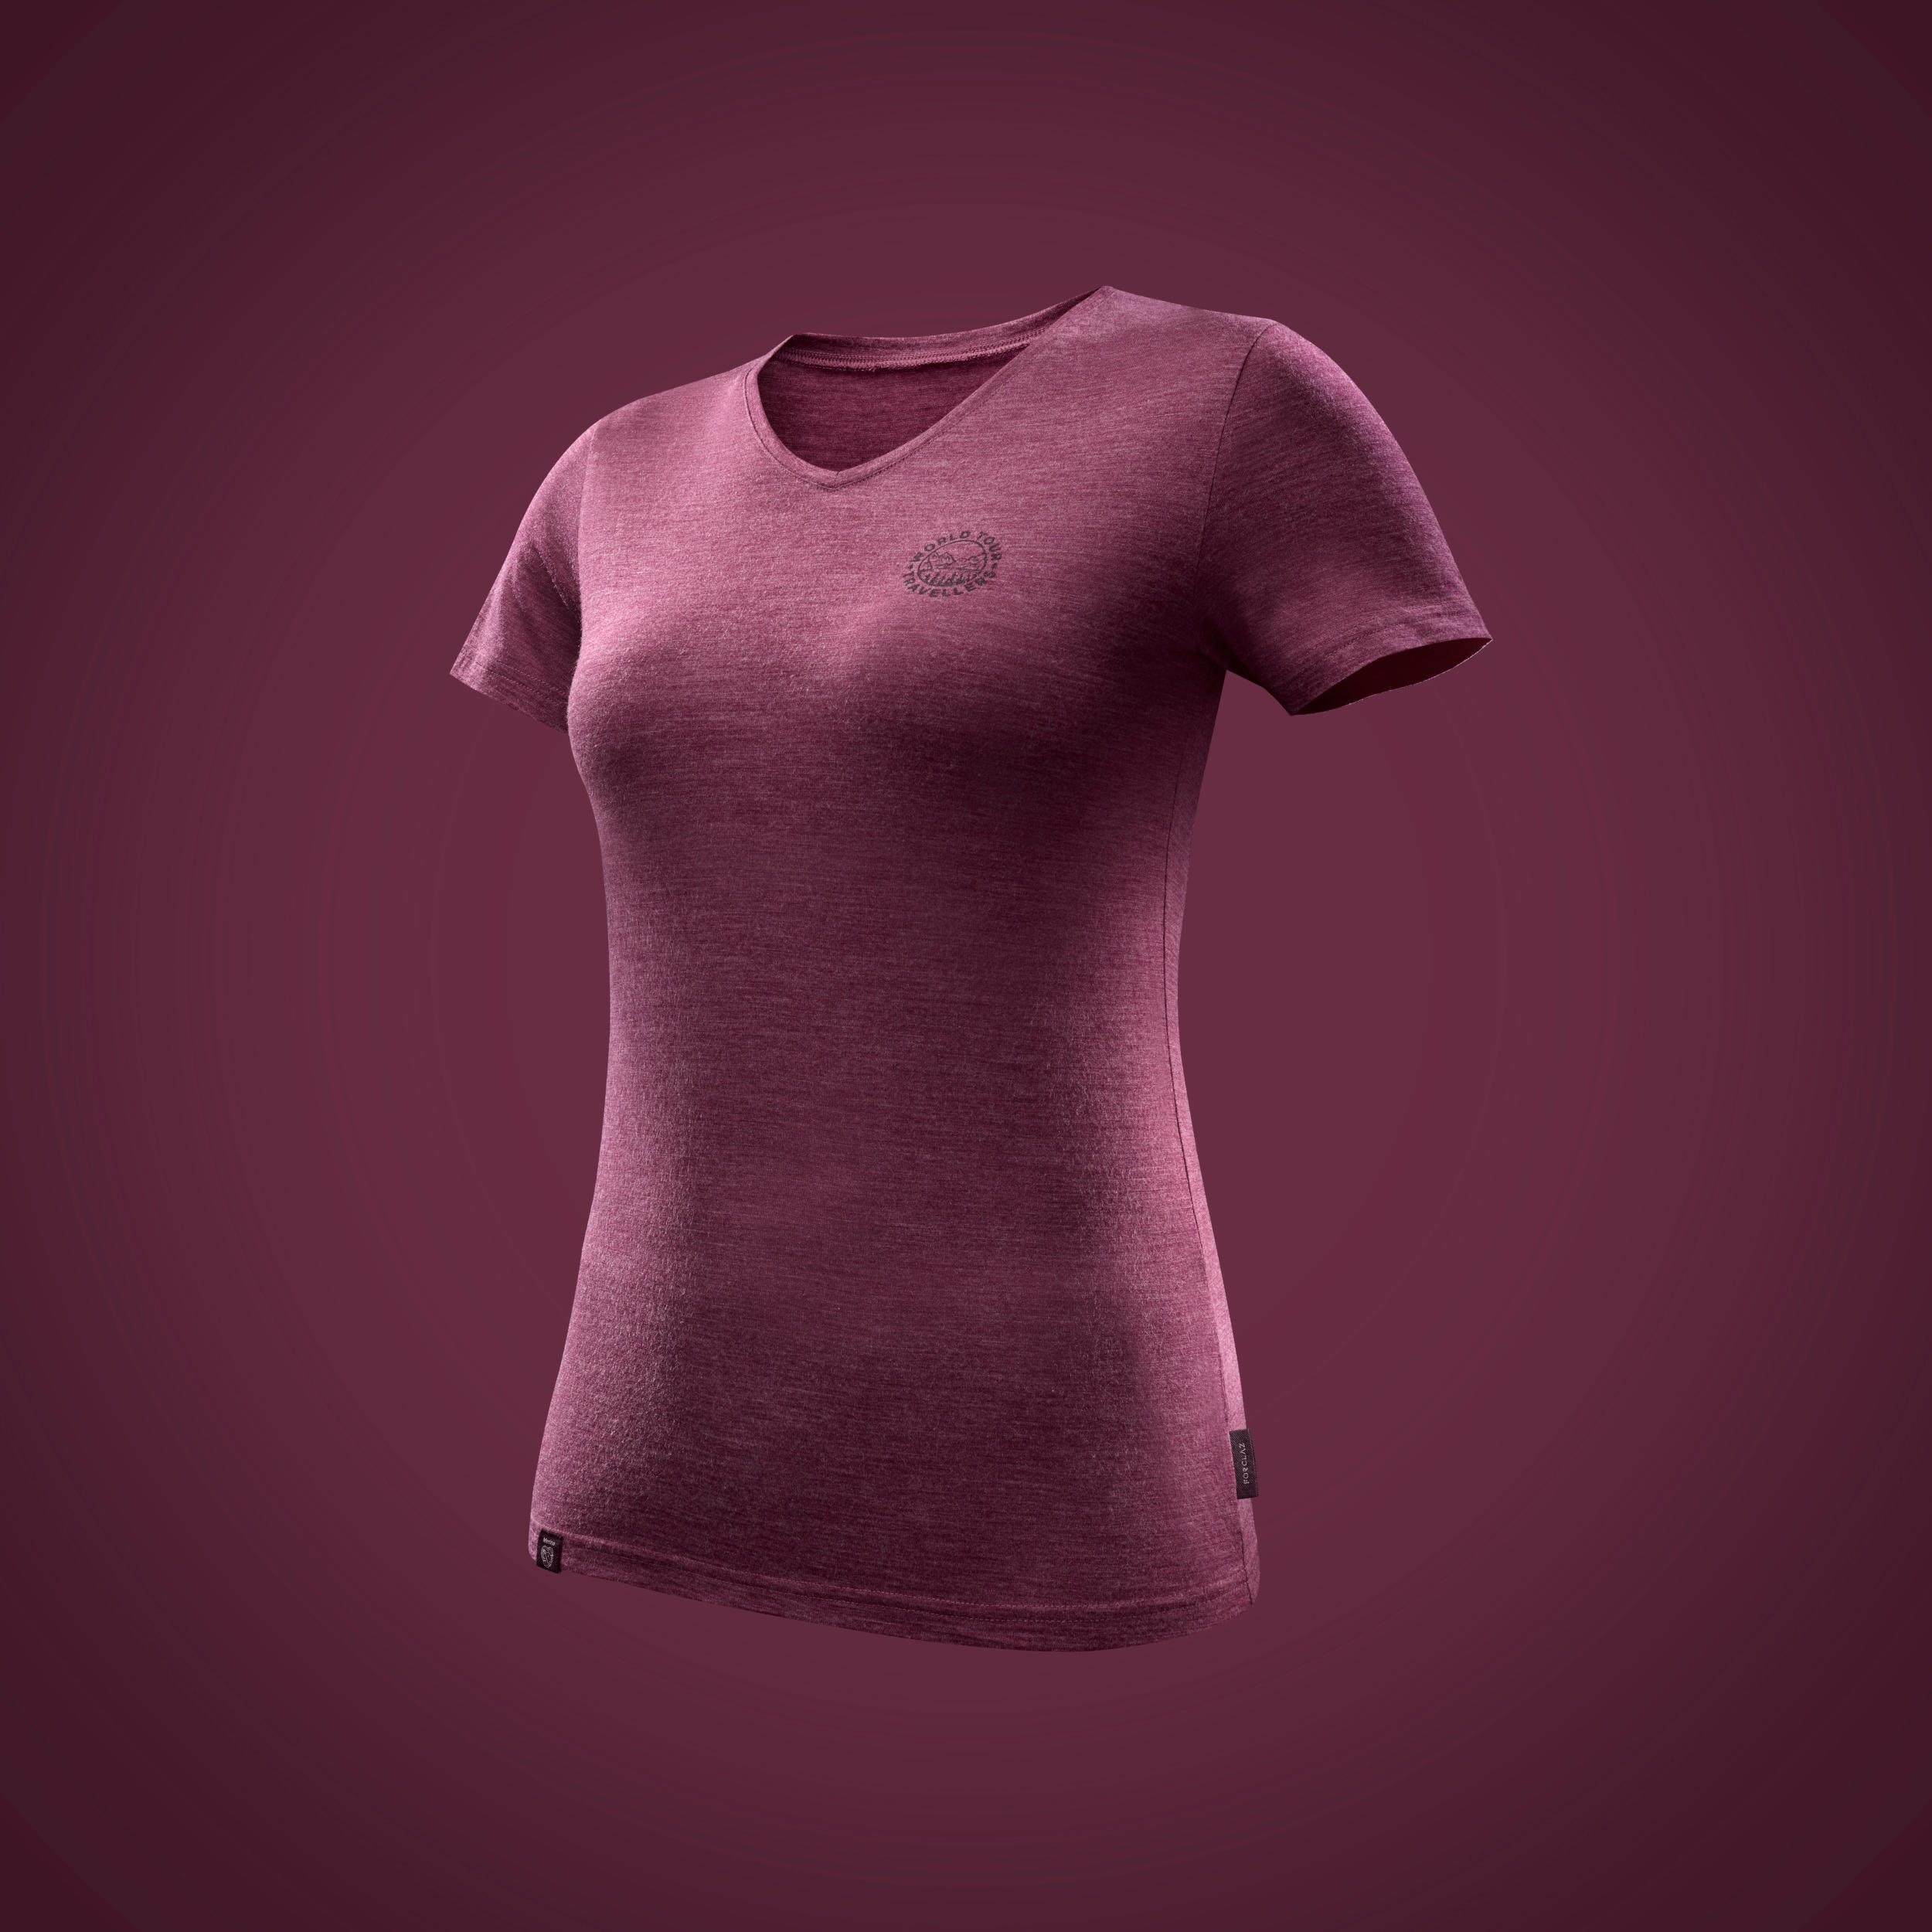 Women's Travel Trekking Merino Wool Short-Sleeved T-Shirt - TRAVEL 500 4/7